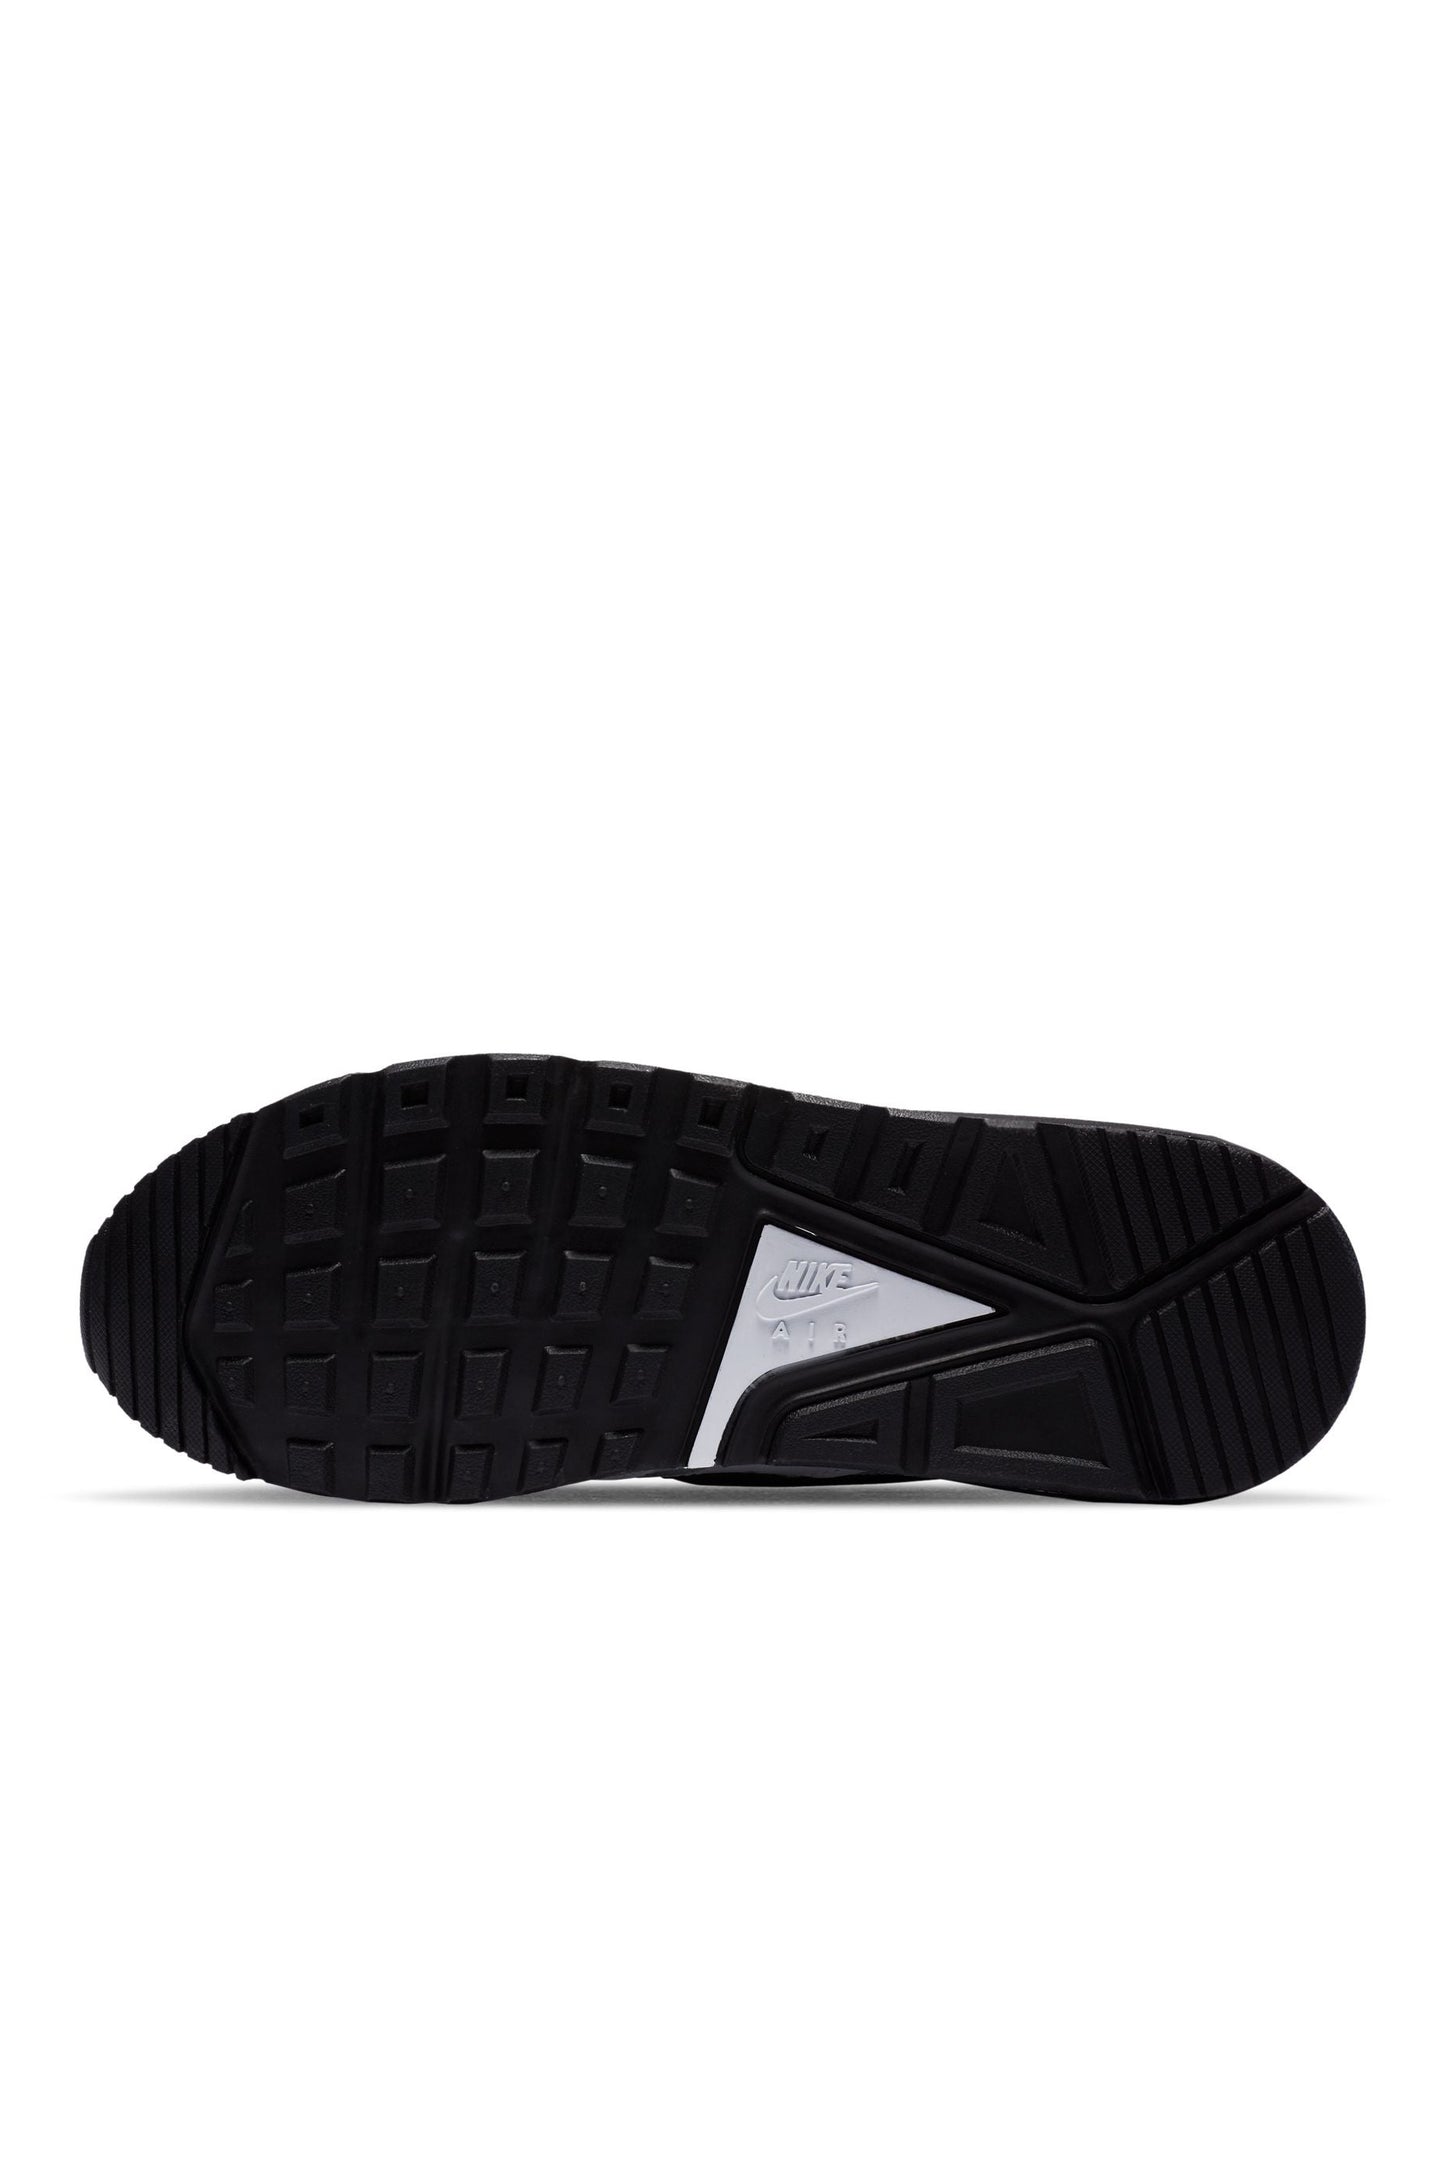 נעלי ספורט לגברים Air Max IVO בצבע לבן ושחור